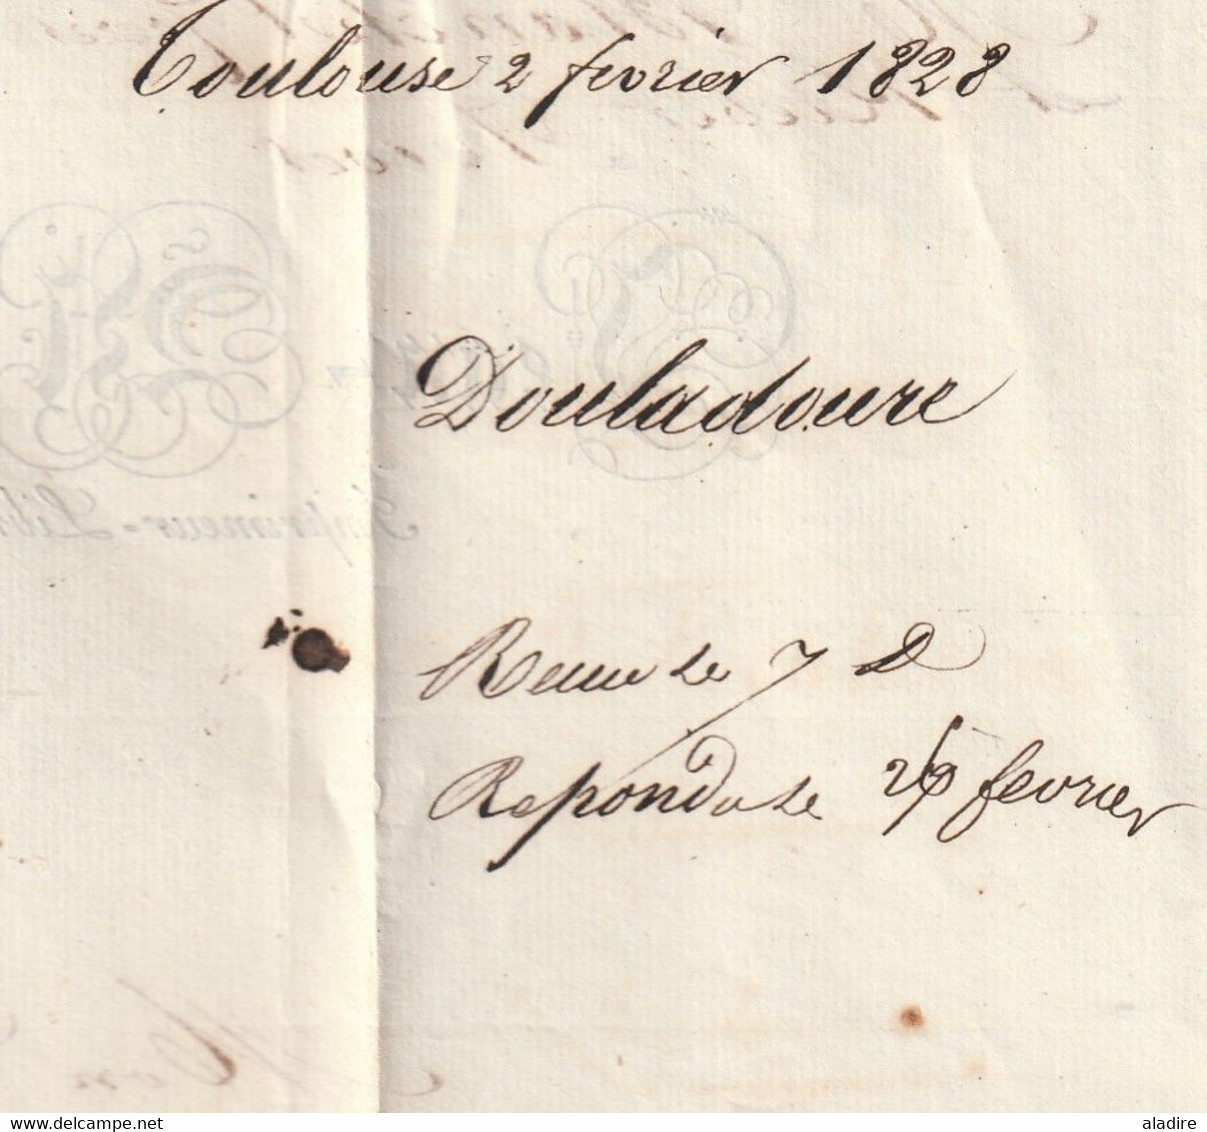 1828 - Marque postale P 30 P TOULOUSE sur lettre pliée avec correspondance vers RIVES, ISERE - dateurs